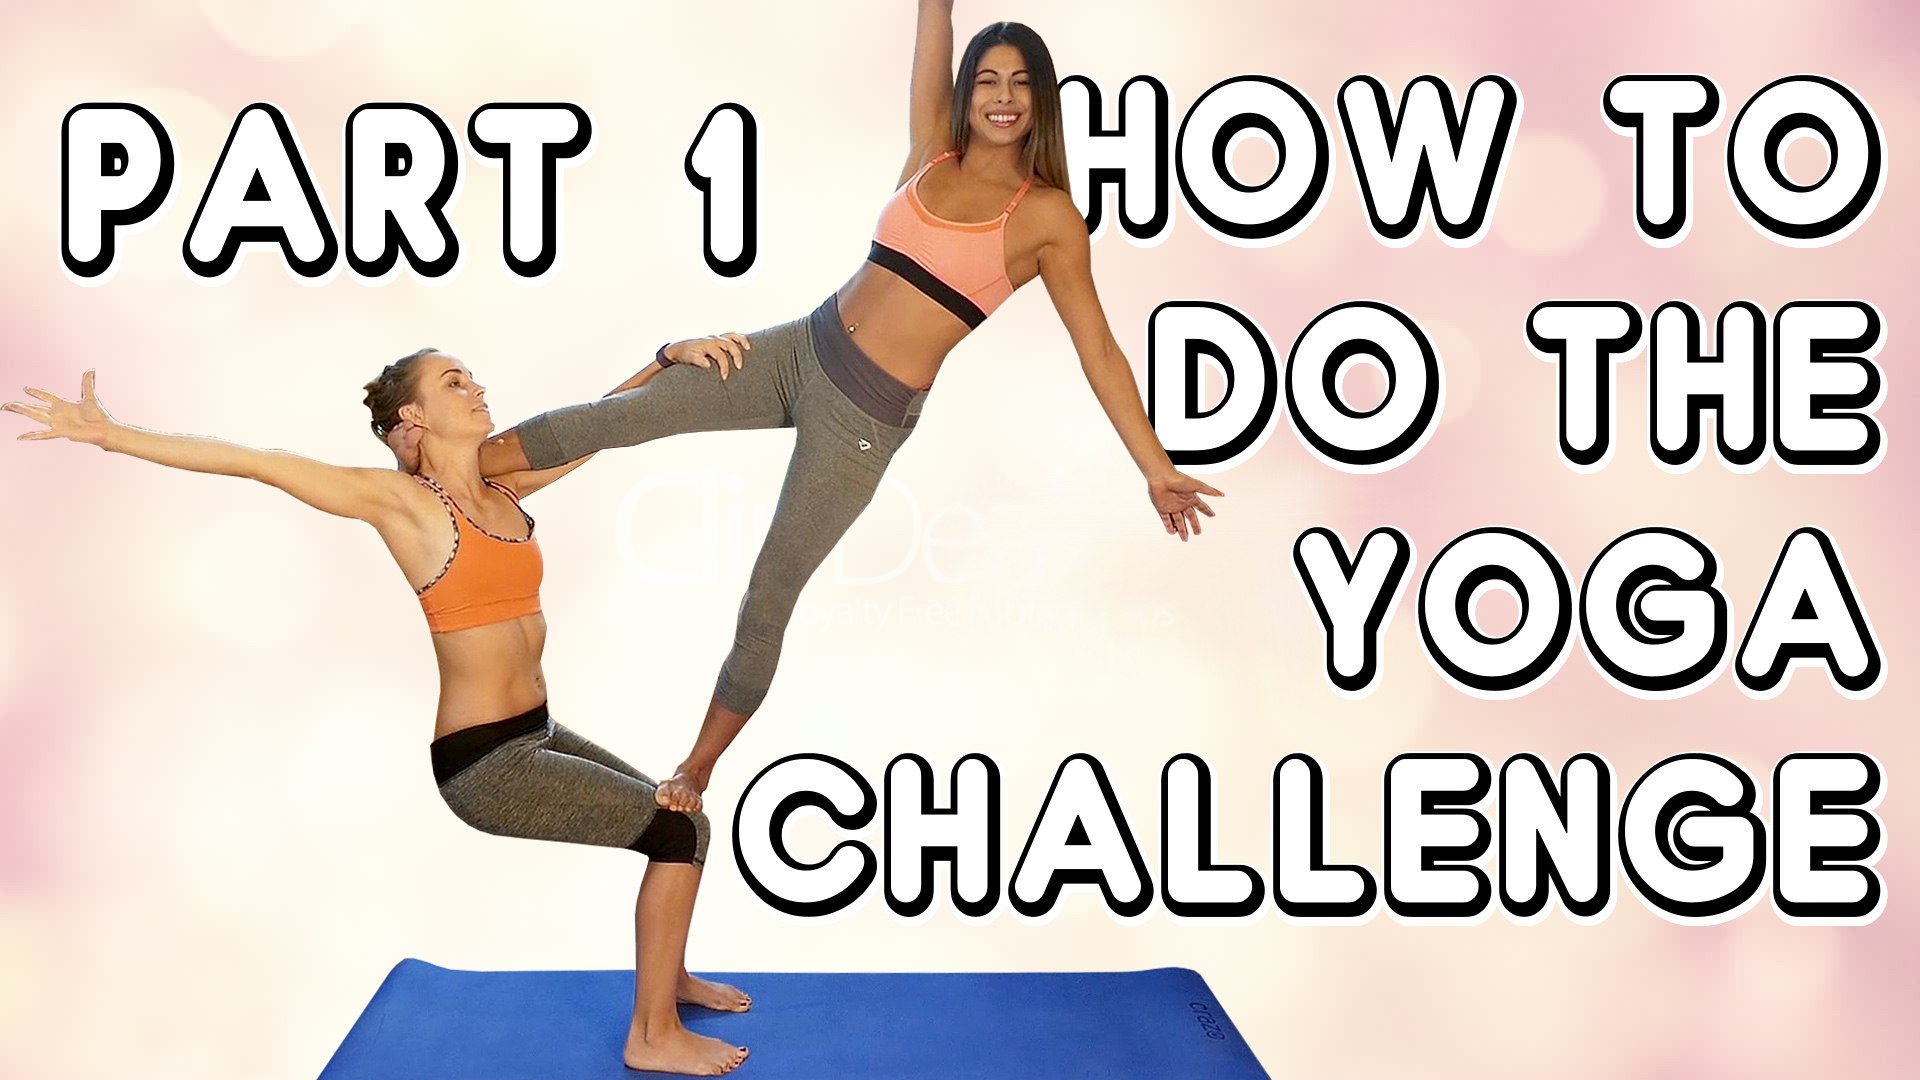 2 person yoga pose  Yoga challenge poses, Couples yoga poses, Two